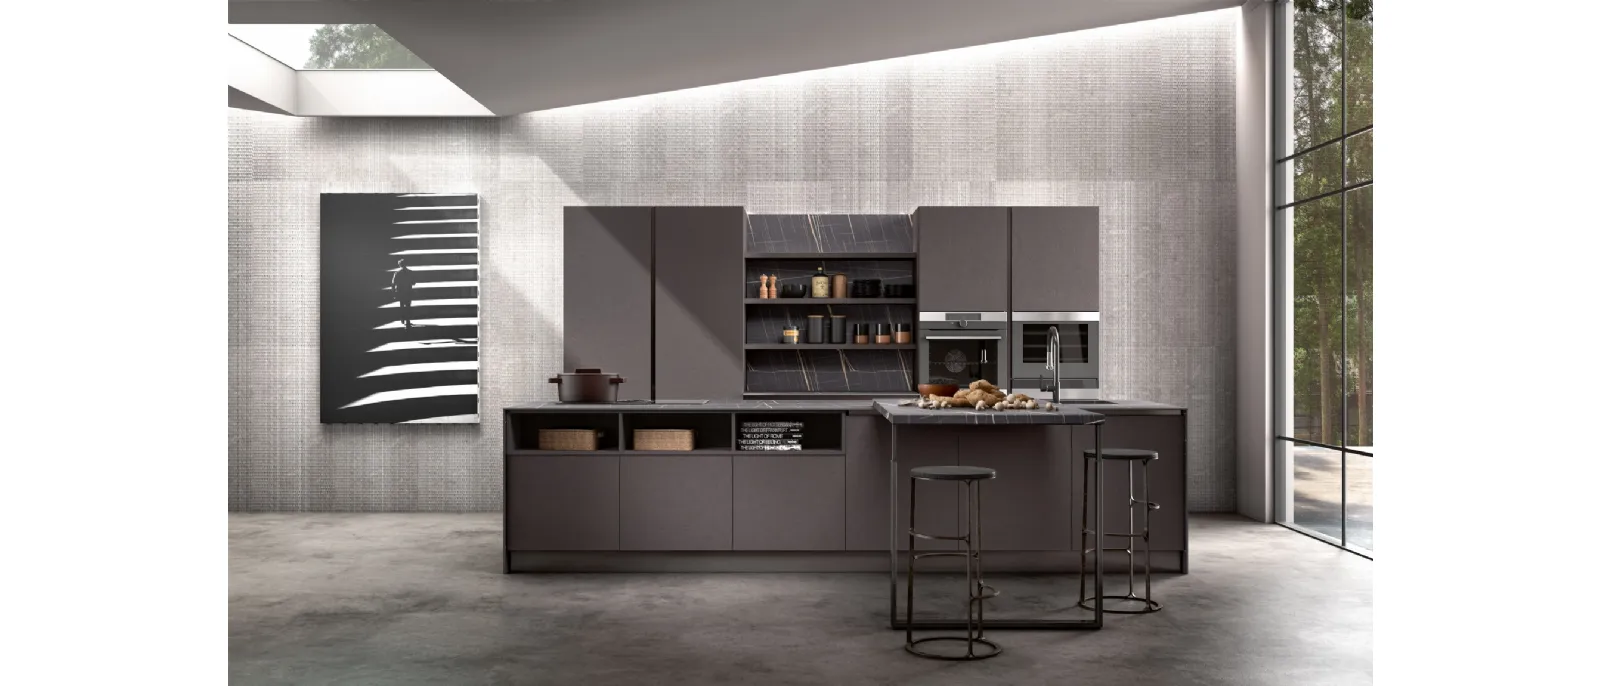 Modern kitchen with Stella island composition 01 by Essebi.